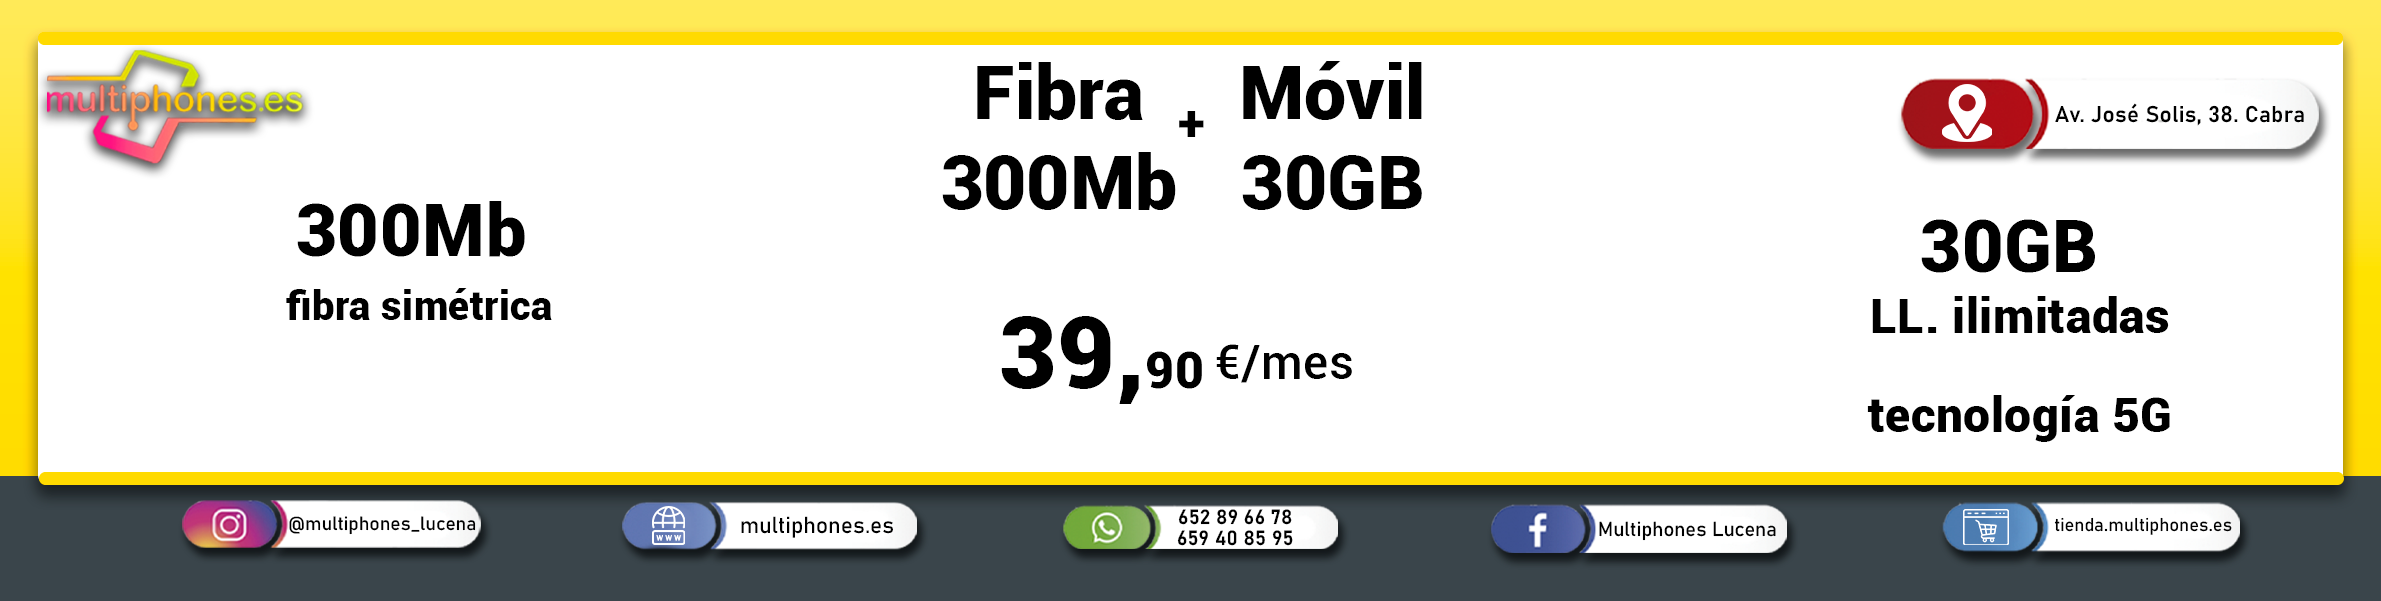 MASMOVIL – FIBRA 300 Y FIJO MÓVIL 30GB y llamadas ilimitadas.